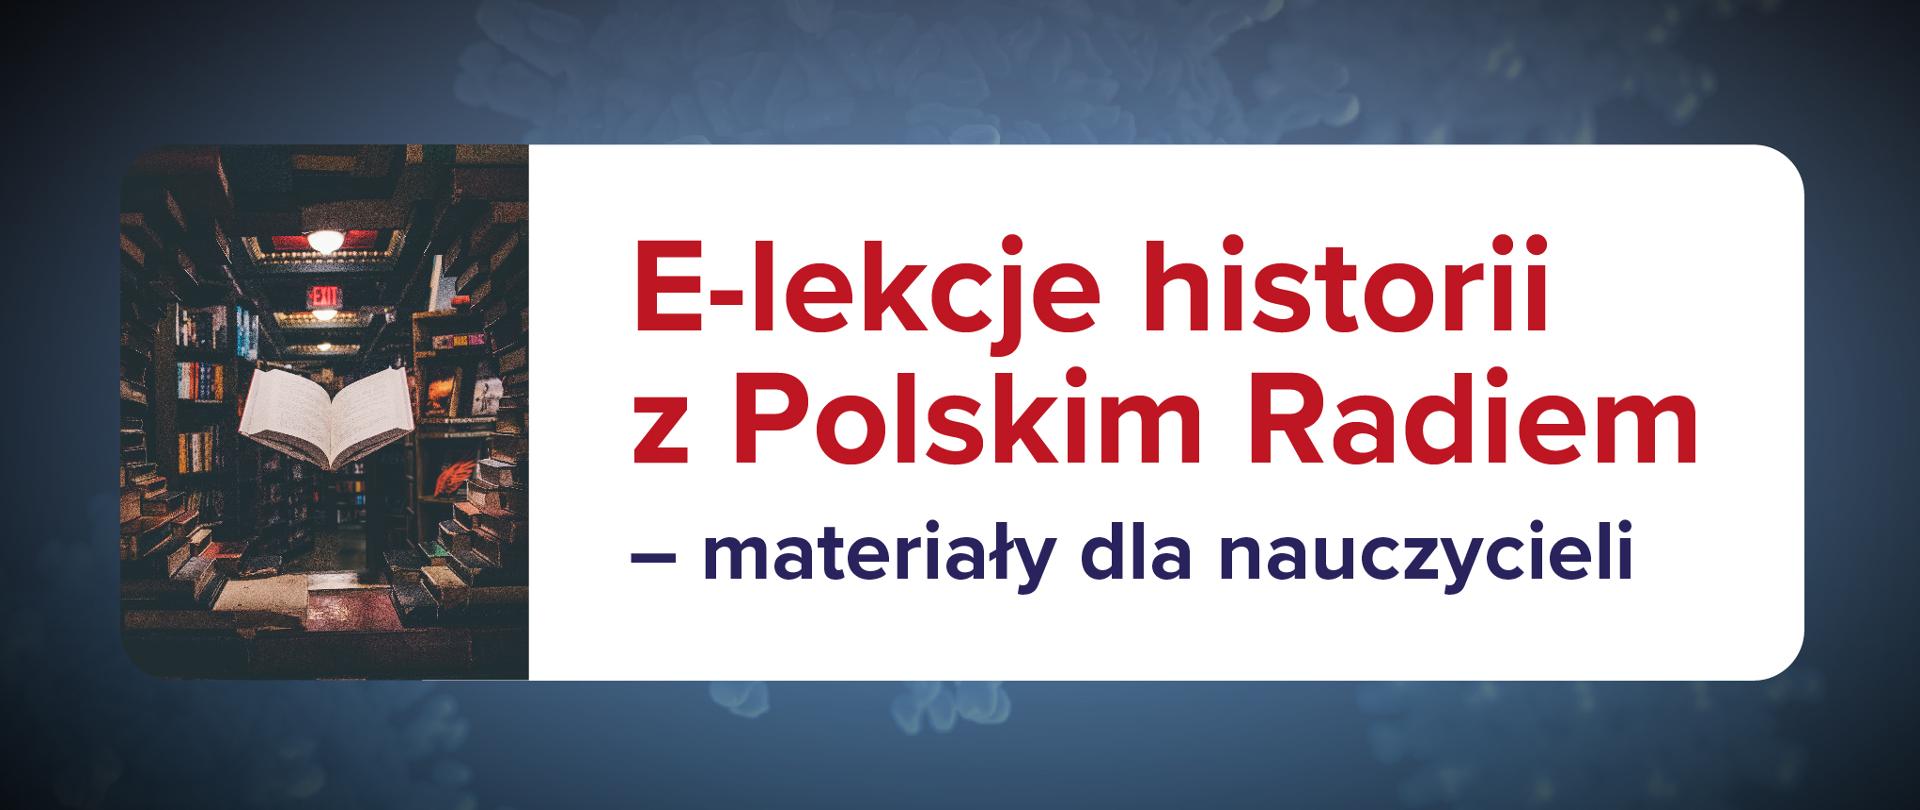 Grafika z tekstem: E-lekcje z Polskim Radiem – materiały dla nauczycieli.
Po lewo małe zdjęcie z książkami.